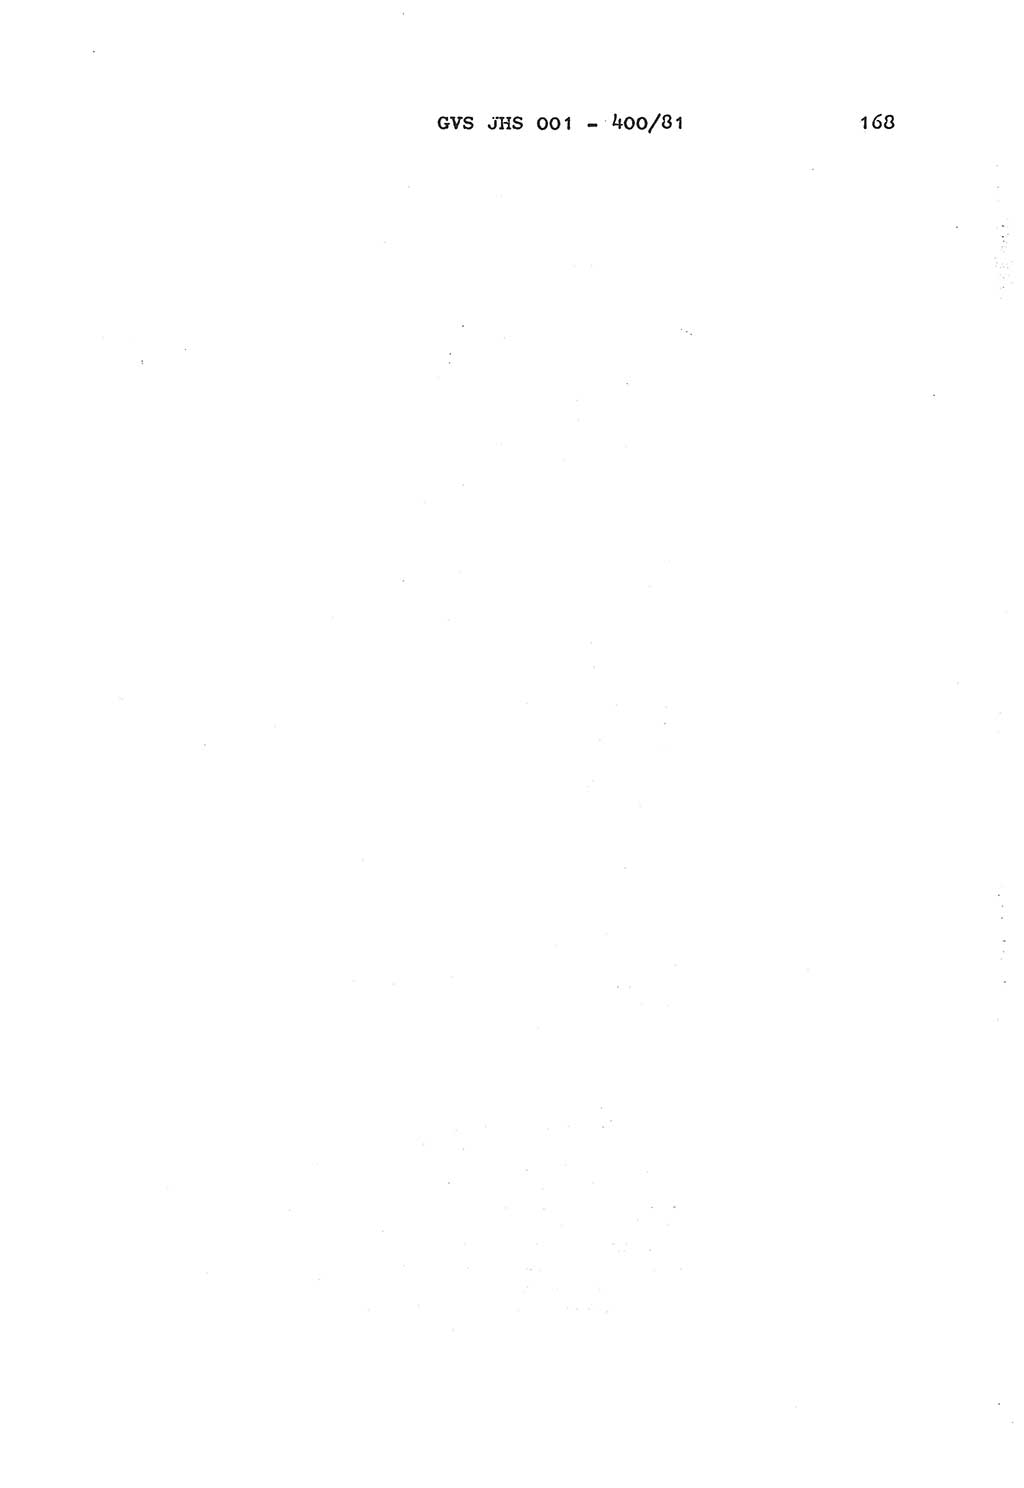 Wörterbuch der politisch-operativen Arbeit, Ministerium für Staatssicherheit (MfS) [Deutsche Demokratische Republik (DDR)], Juristische Hochschule (JHS), Geheime Verschlußsache (GVS) o001-400/81, Potsdam 1985, Blatt 168 (Wb. pol.-op. Arb. MfS DDR JHS GVS o001-400/81 1985, Bl. 168)